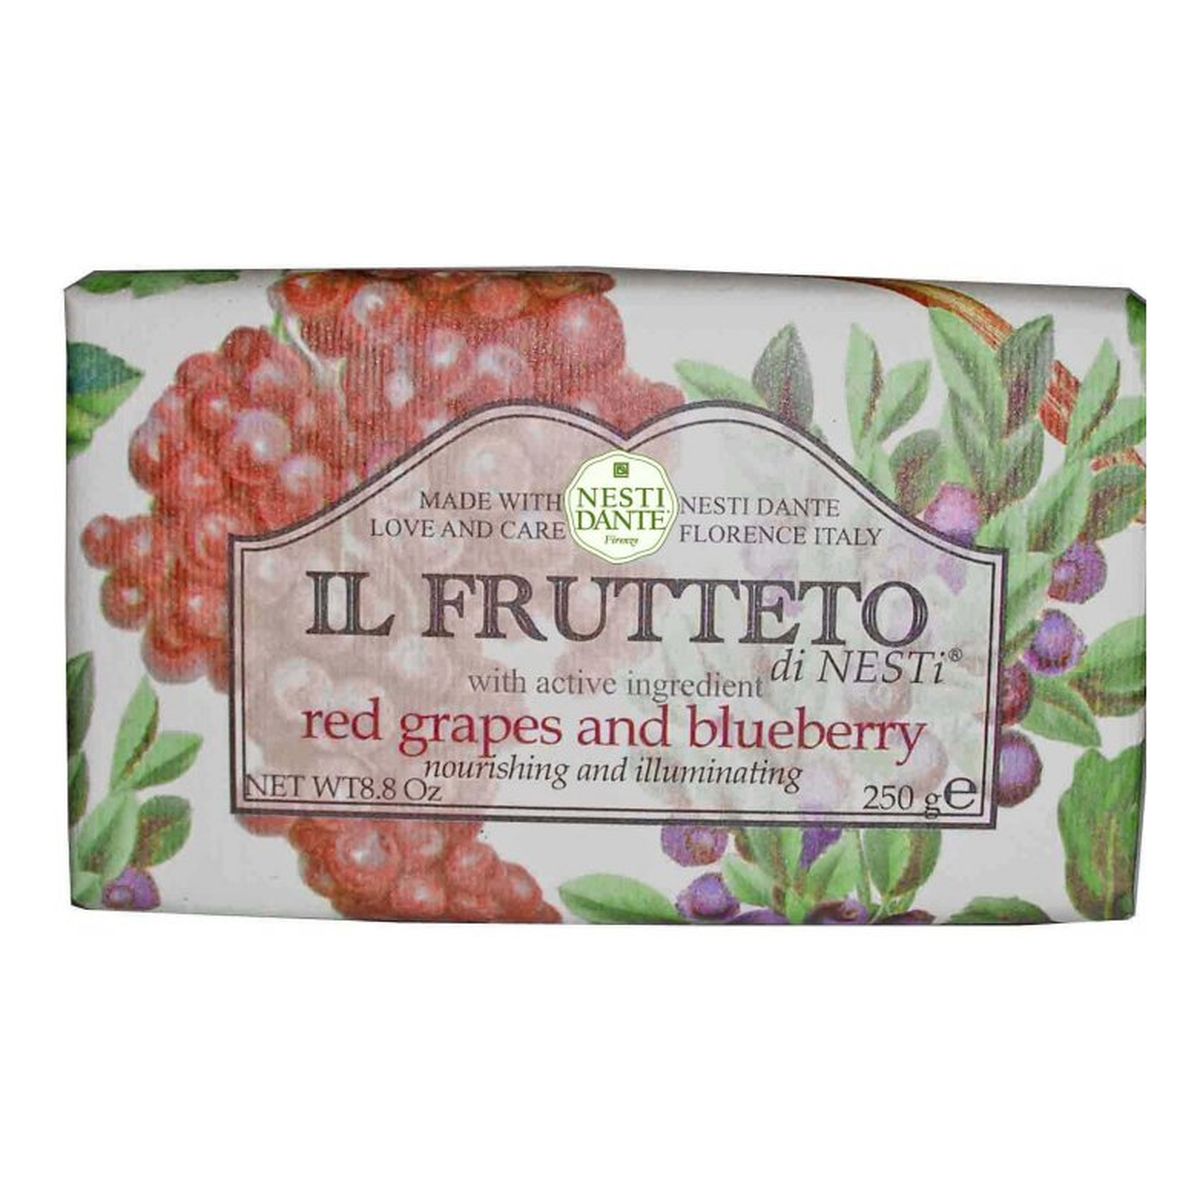 Nesti Dante Il Frutteto mydło na bazie winogron i jagód 250g